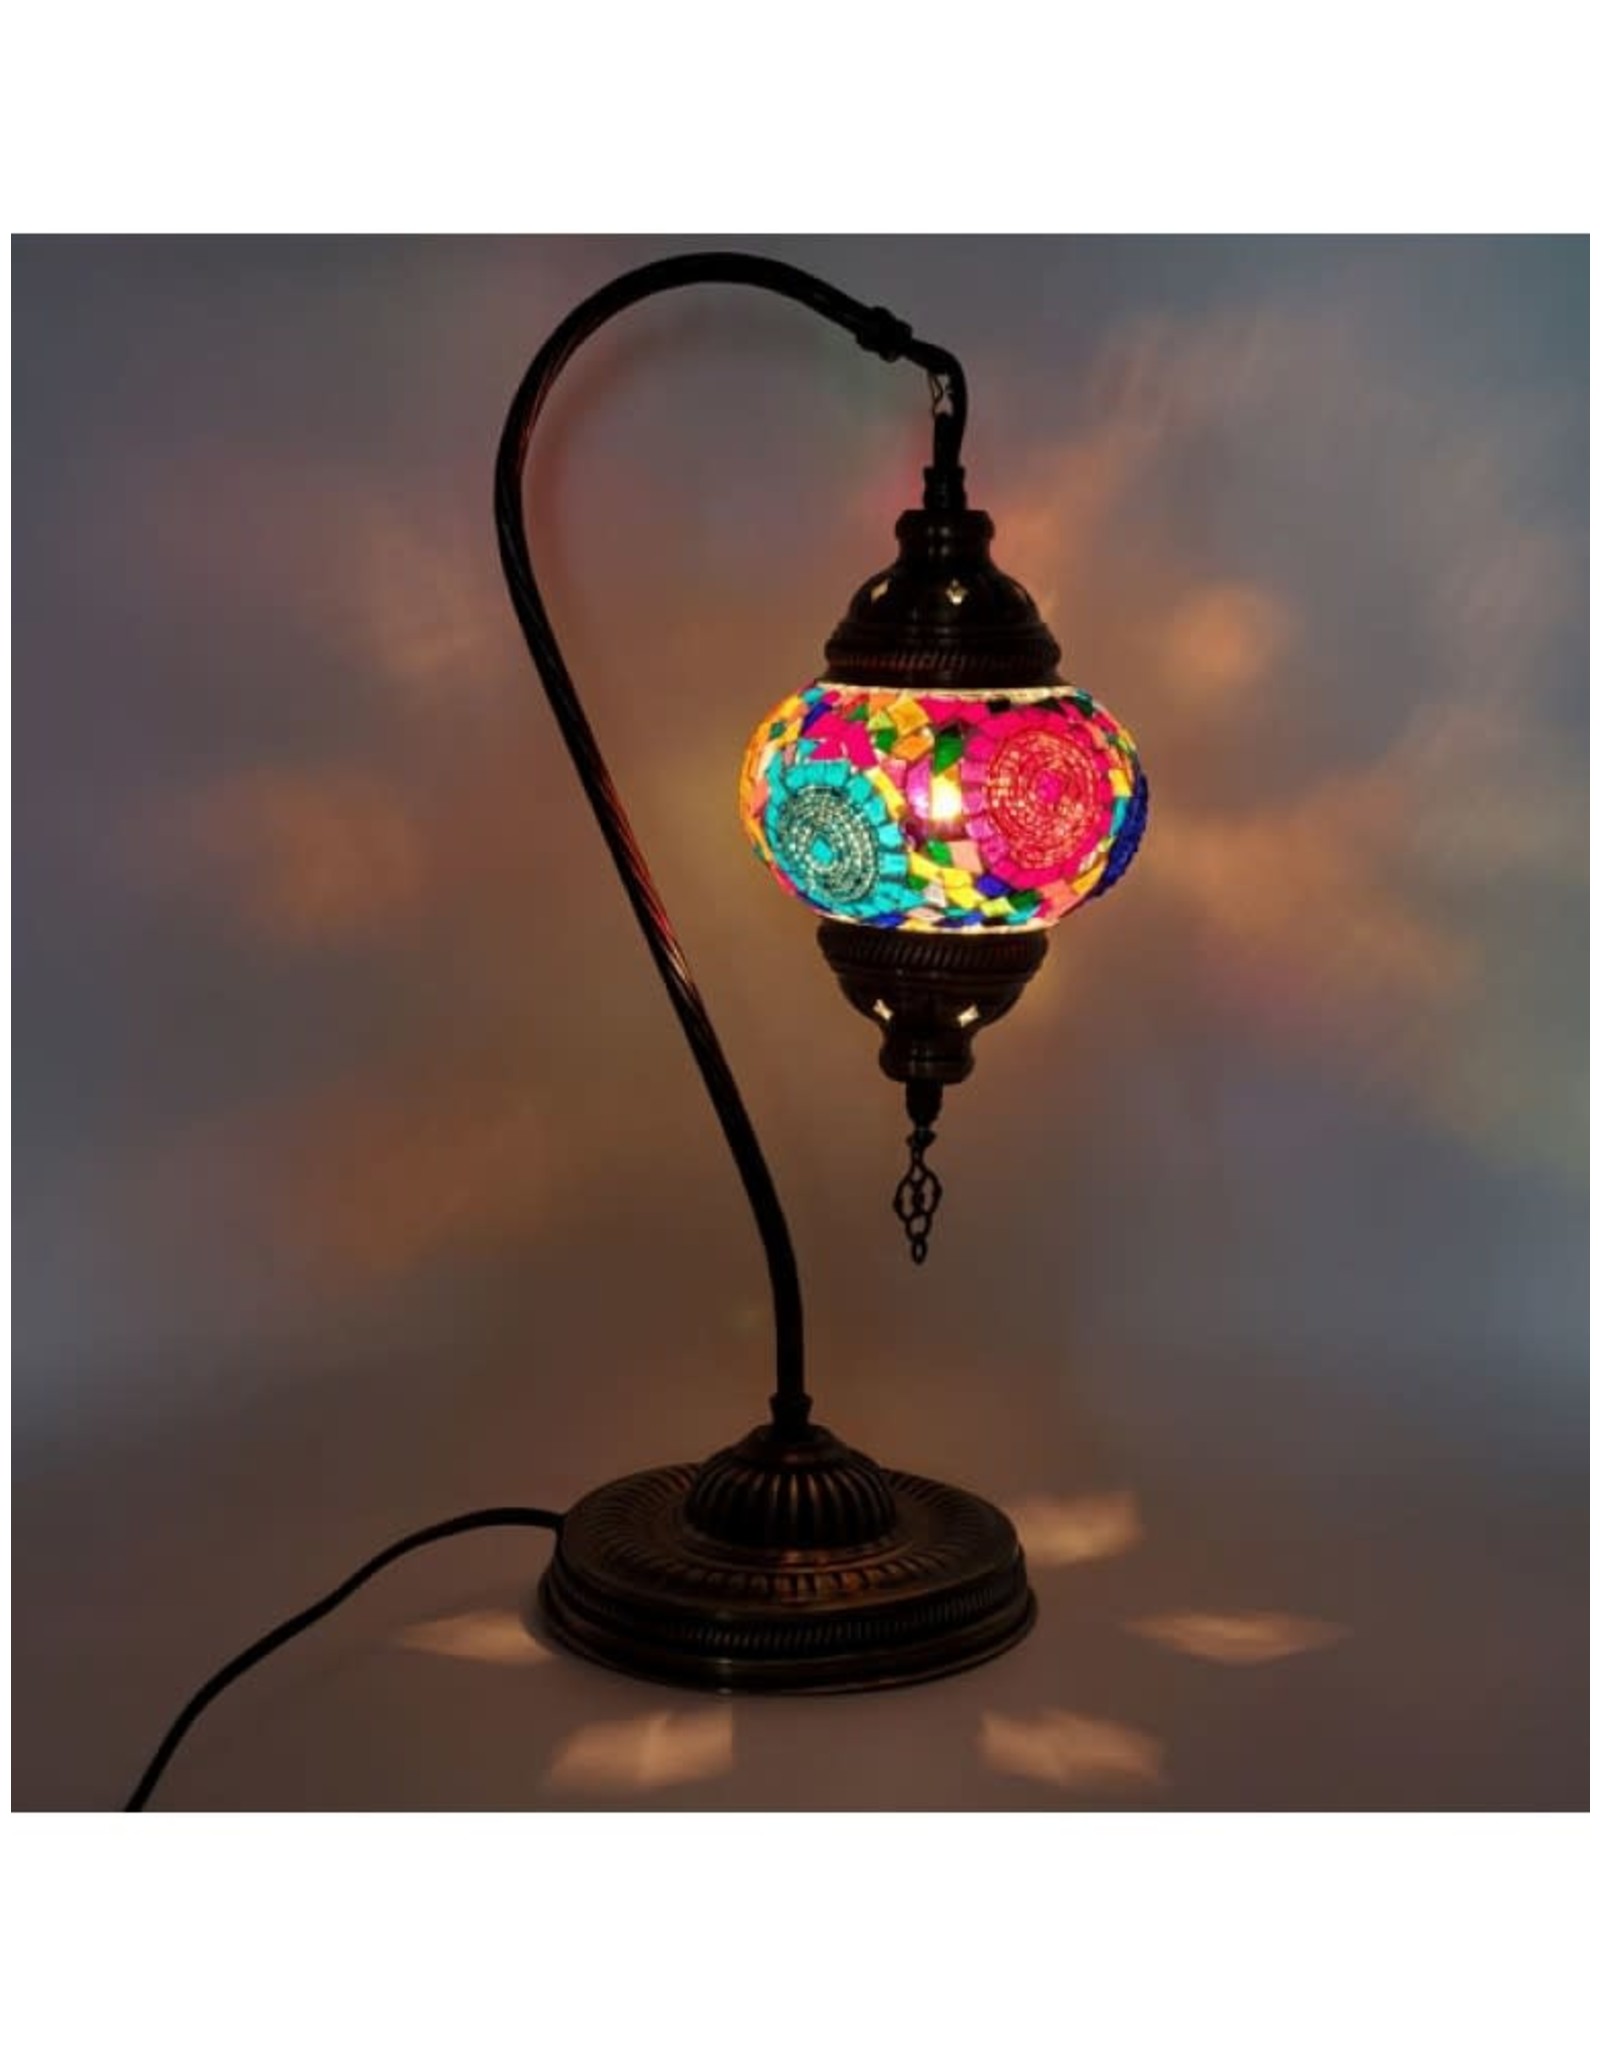 Turkish Mosaic Desk Lamp